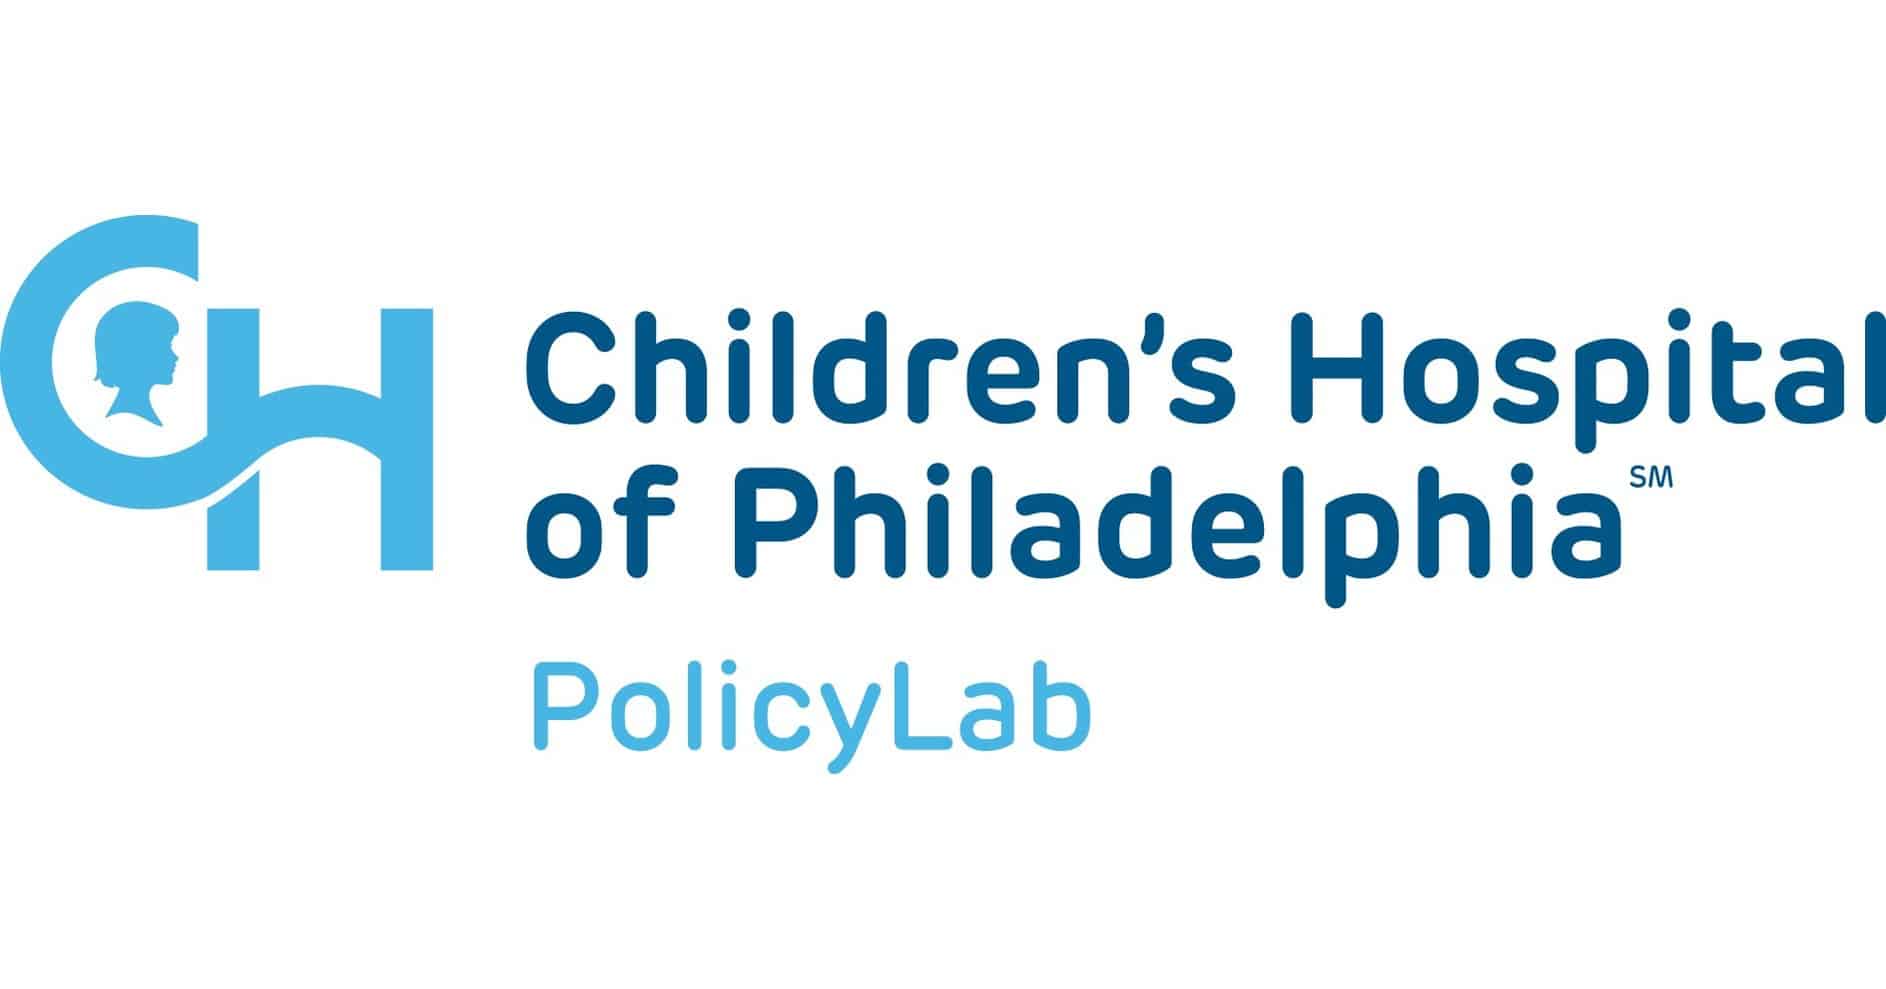 PolicyLab at Children's Hospital of Philadelphia logo